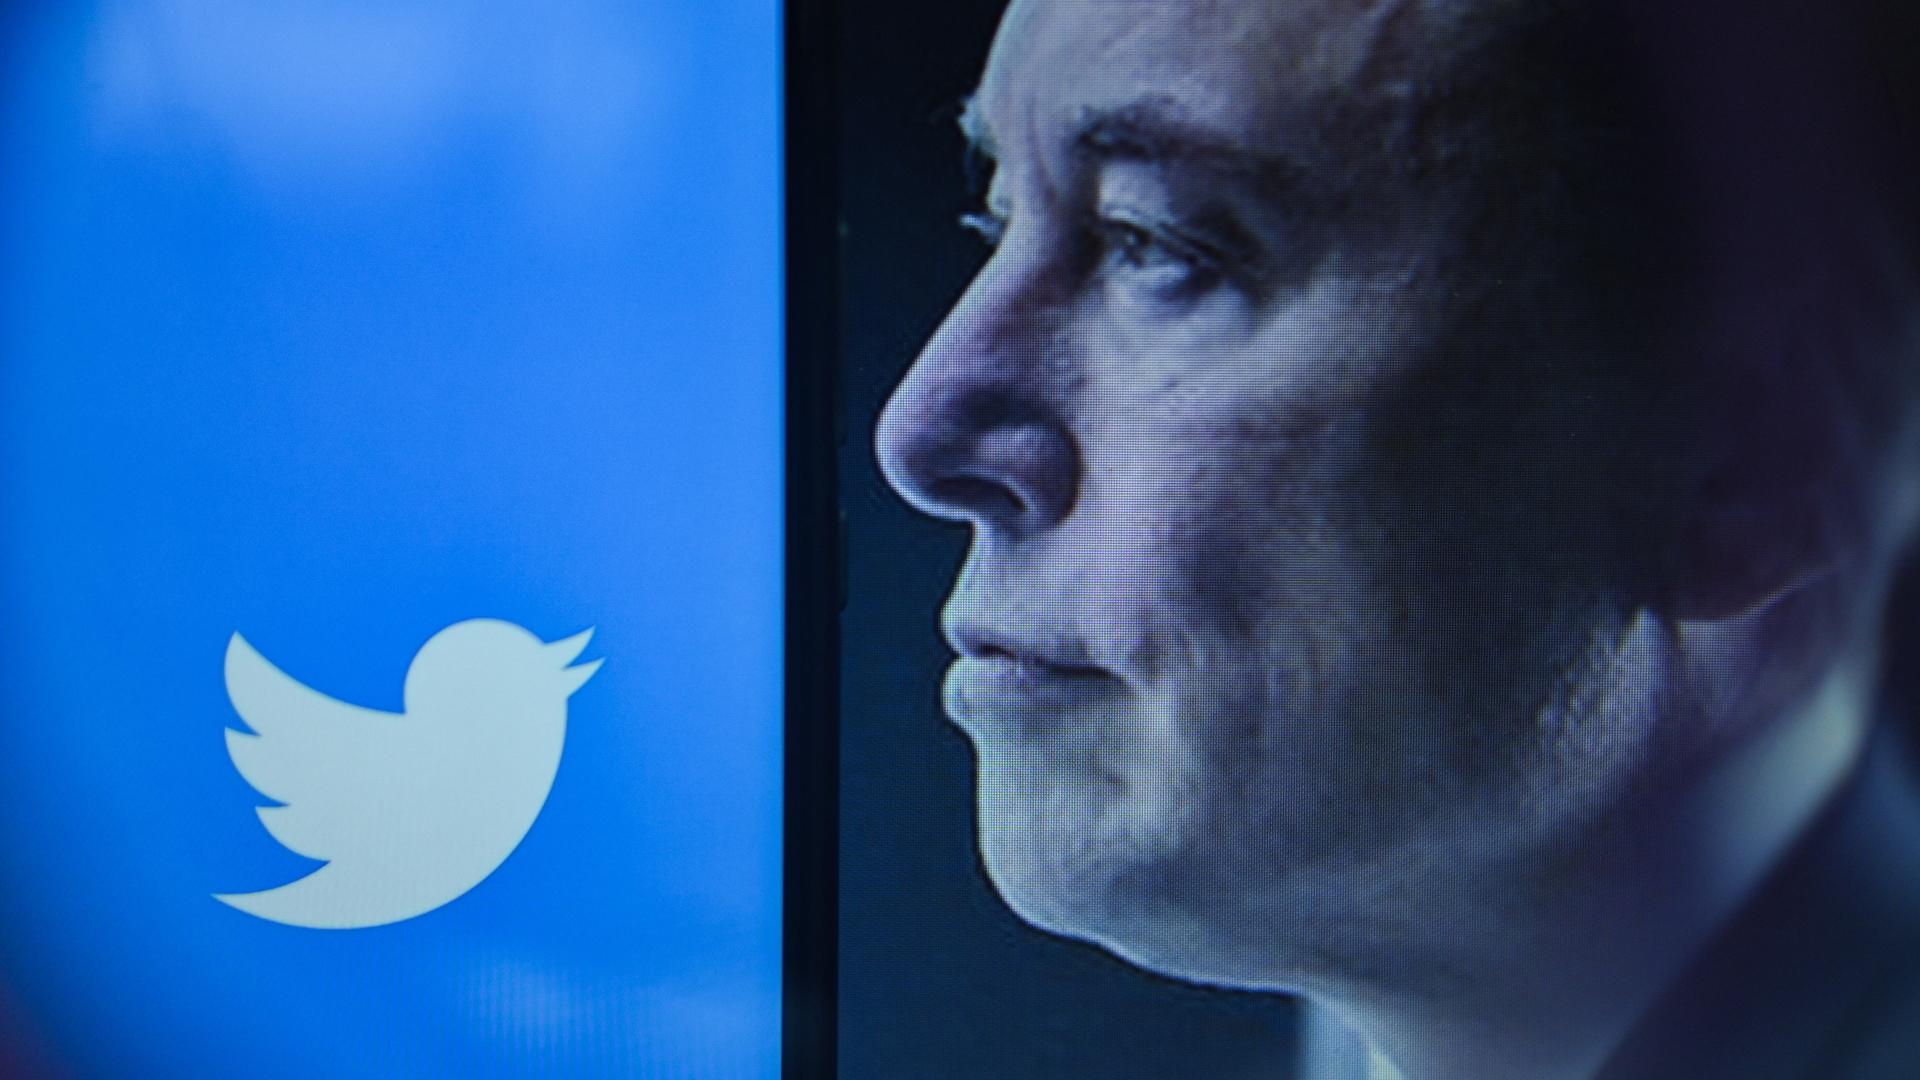 Twitter-Chef Musks Gesicht im Profil blickt in Richtung des Twitter-Symbols.